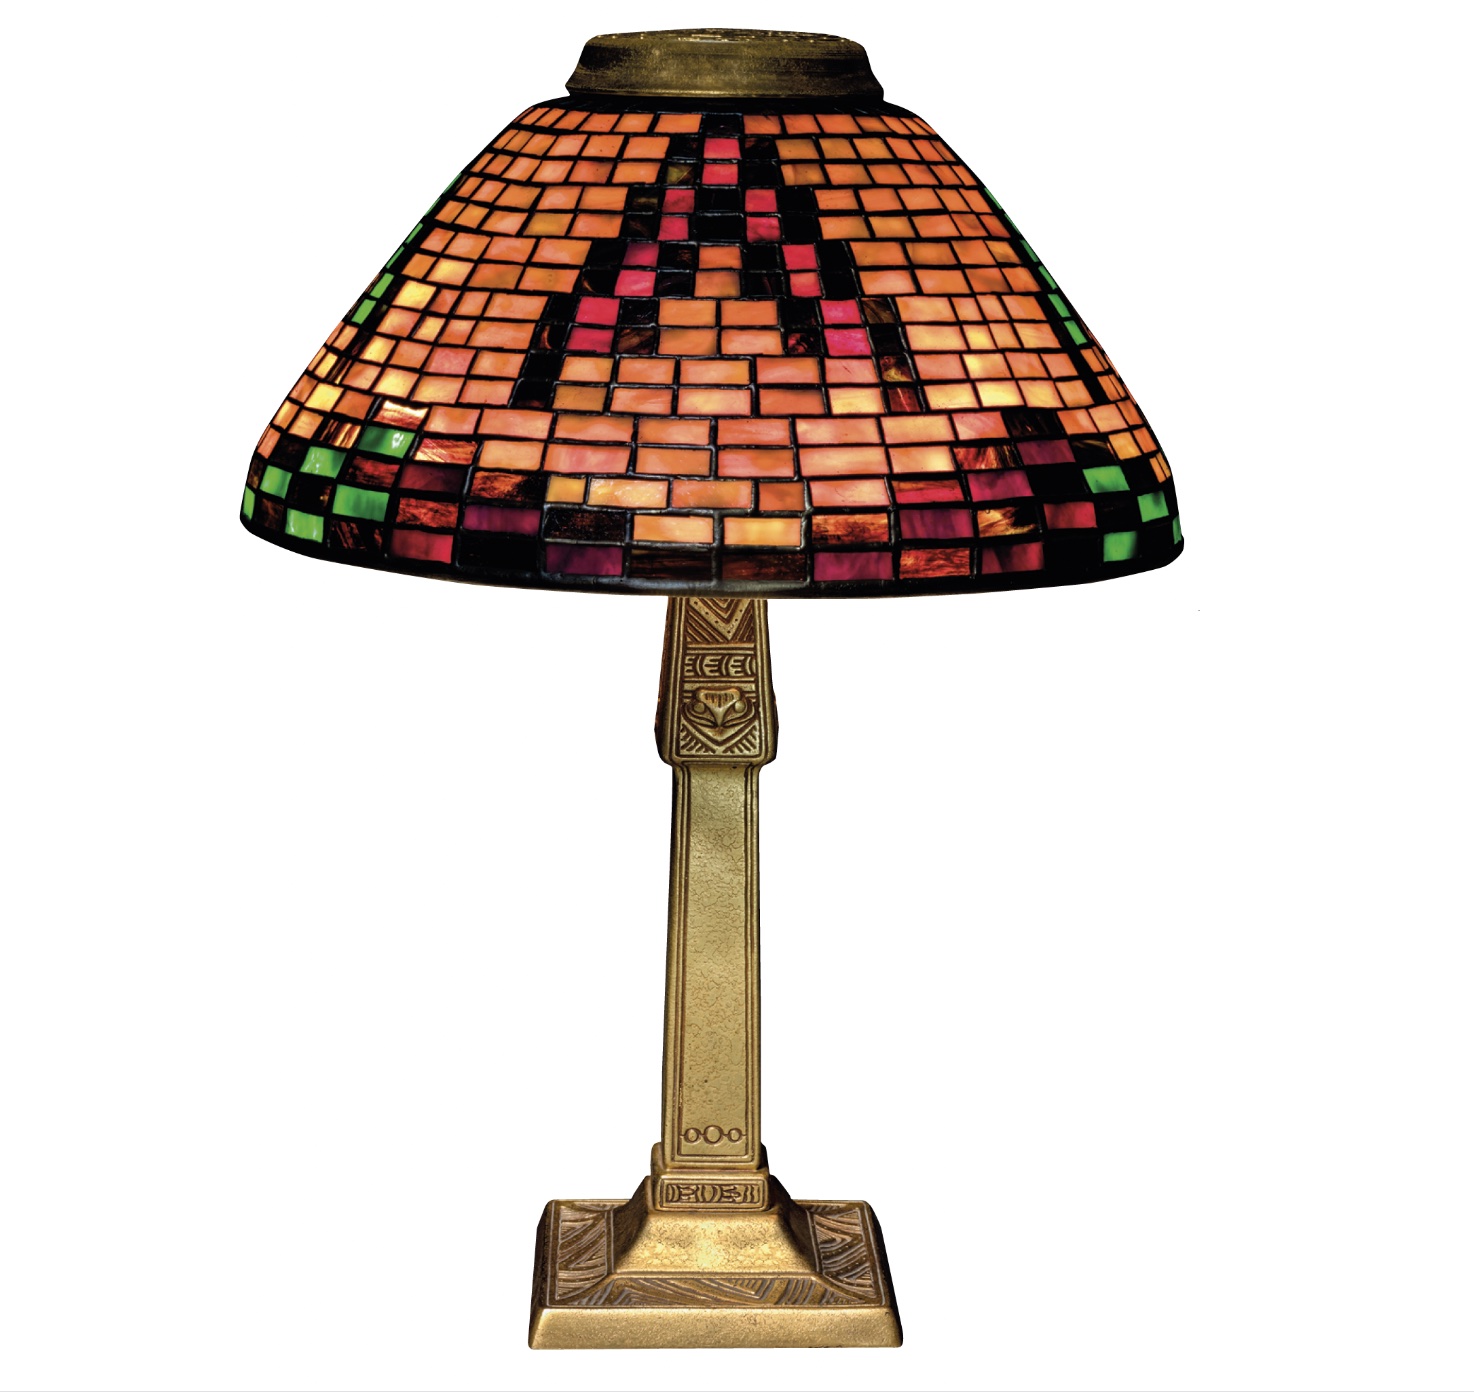 Indian Basket lamp, c. 1902–1910, maker Tiffany Studios